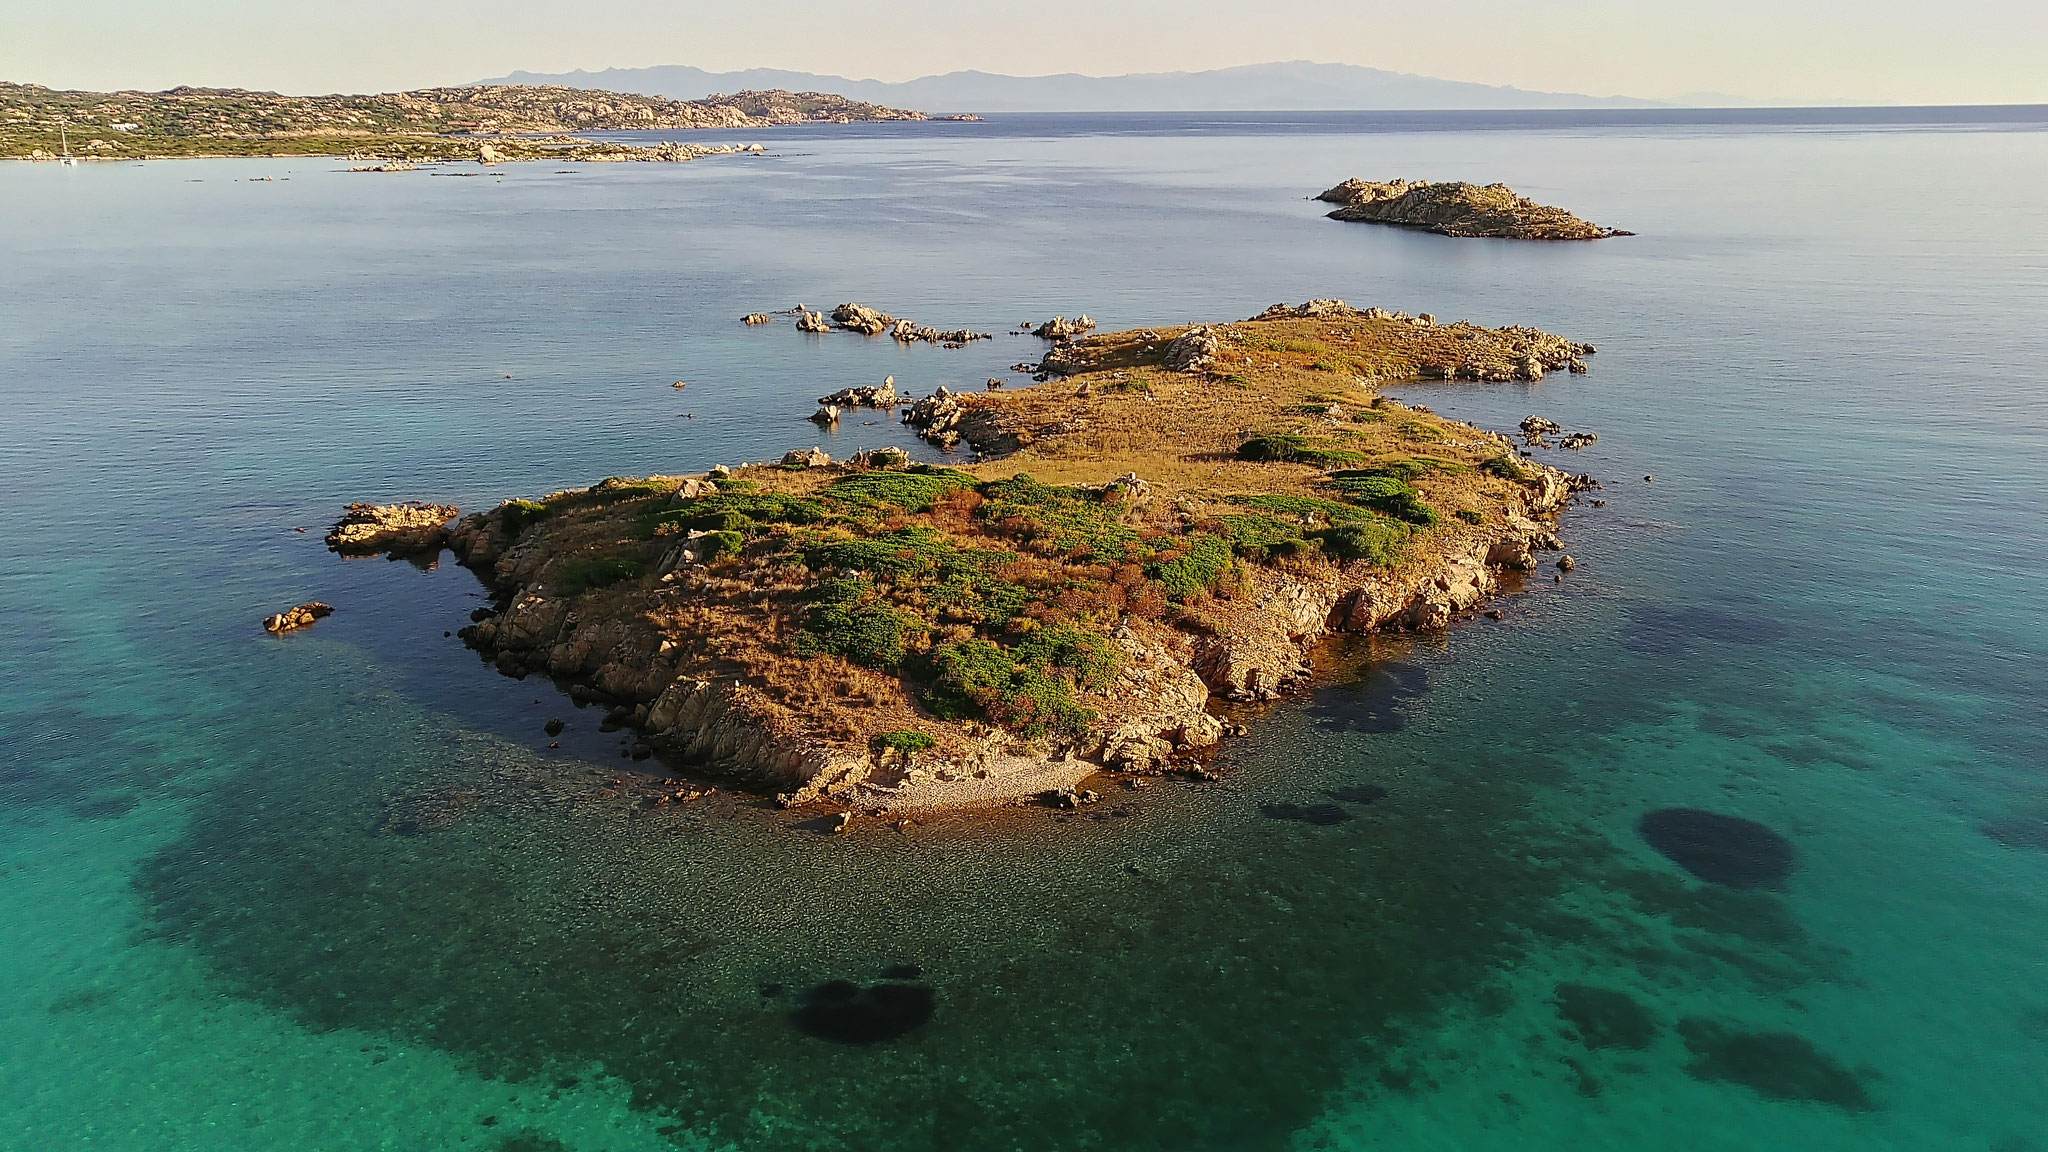 Im Hintergrund ist Korsika zu erkennen.